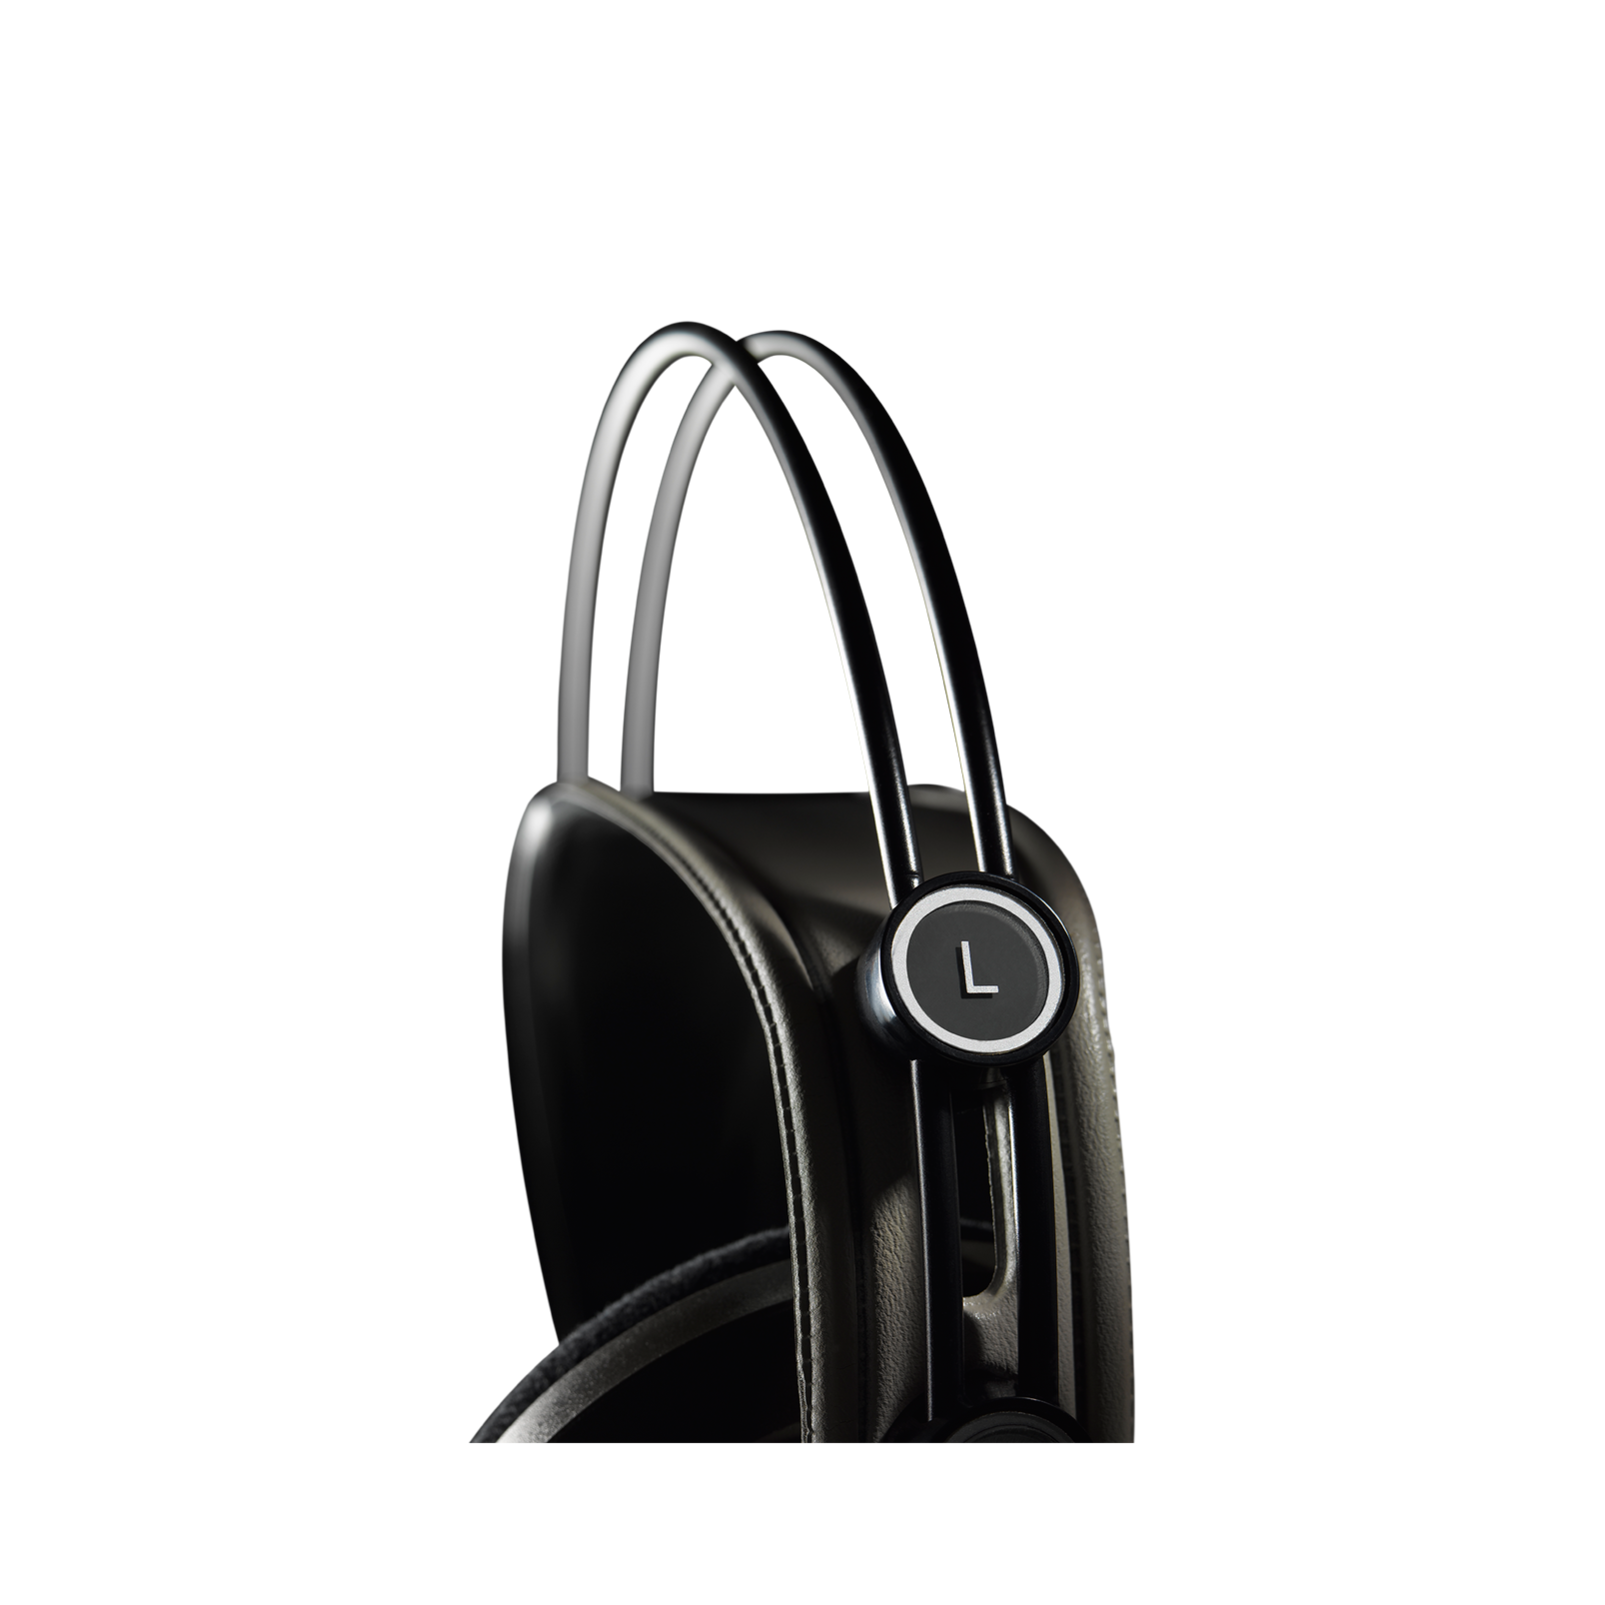 K142HD (discontinued) - Black - Over-ear, semi-open studio headphones with adjustable headband - Detailshot 1